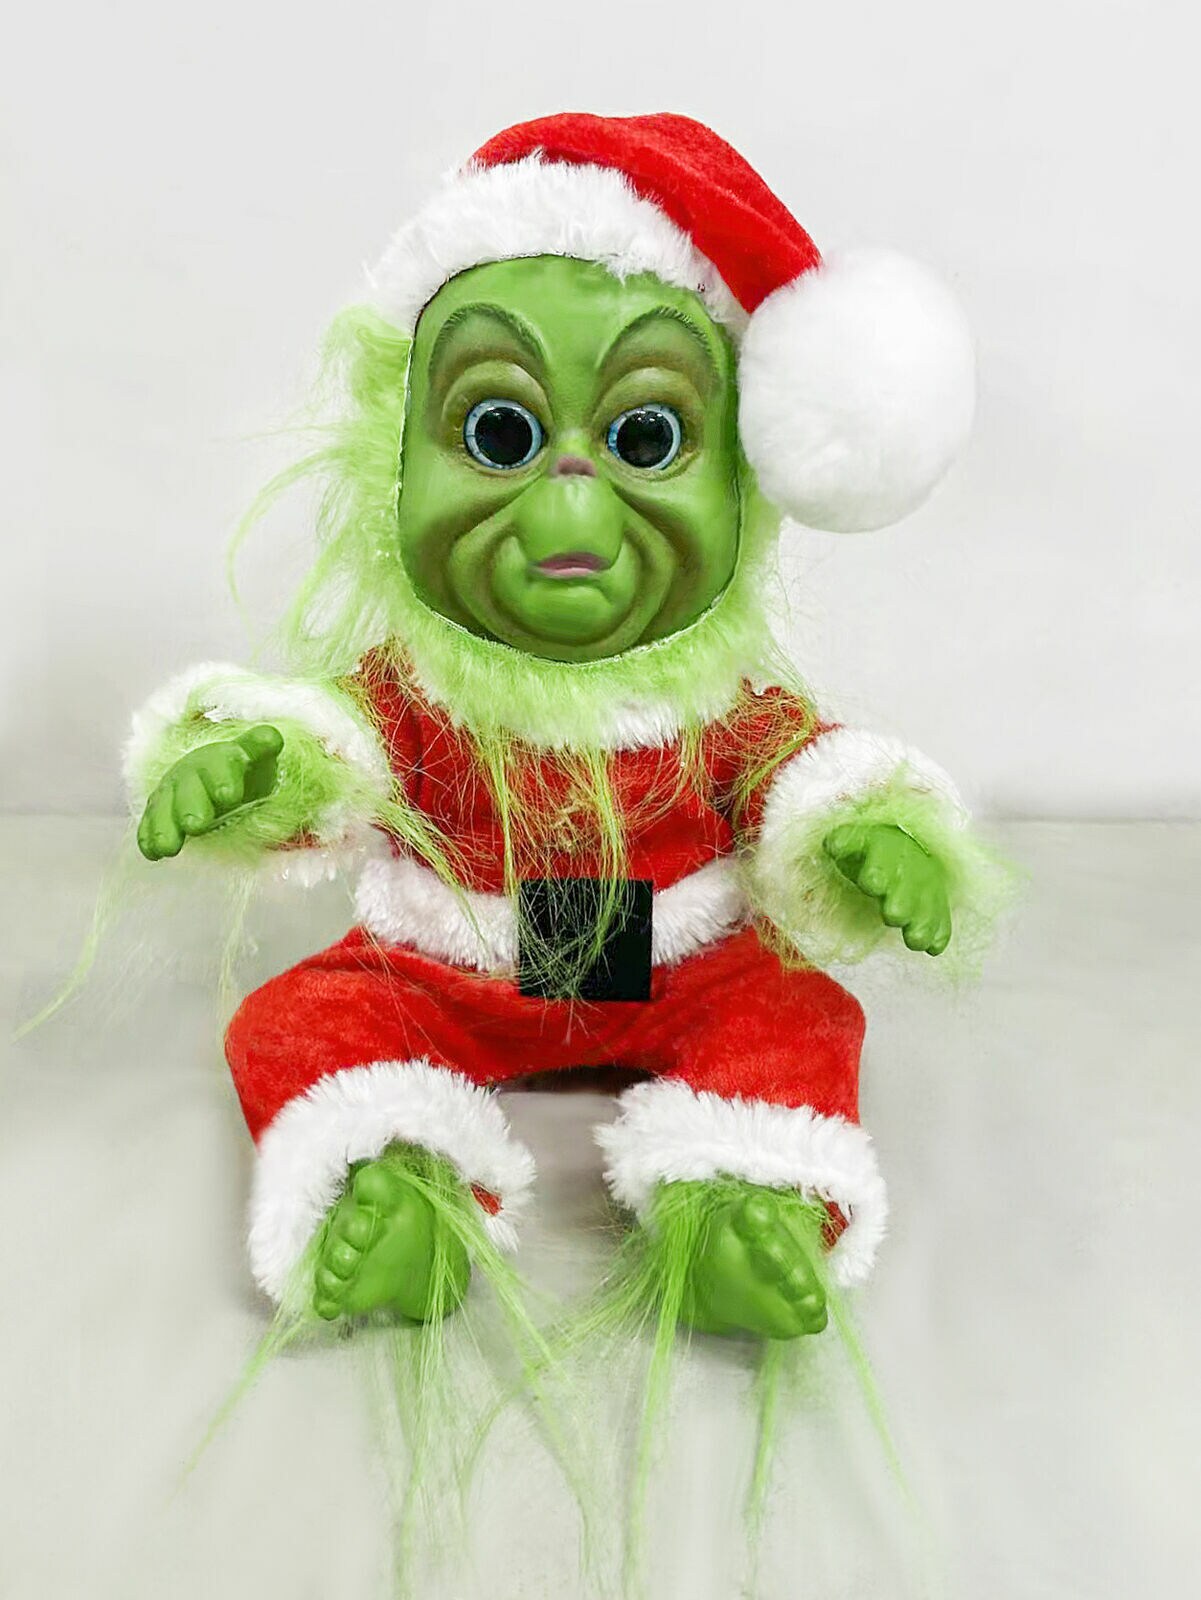 Kitcheniva Christmas Grinch Baby Stuffed Plush Toys